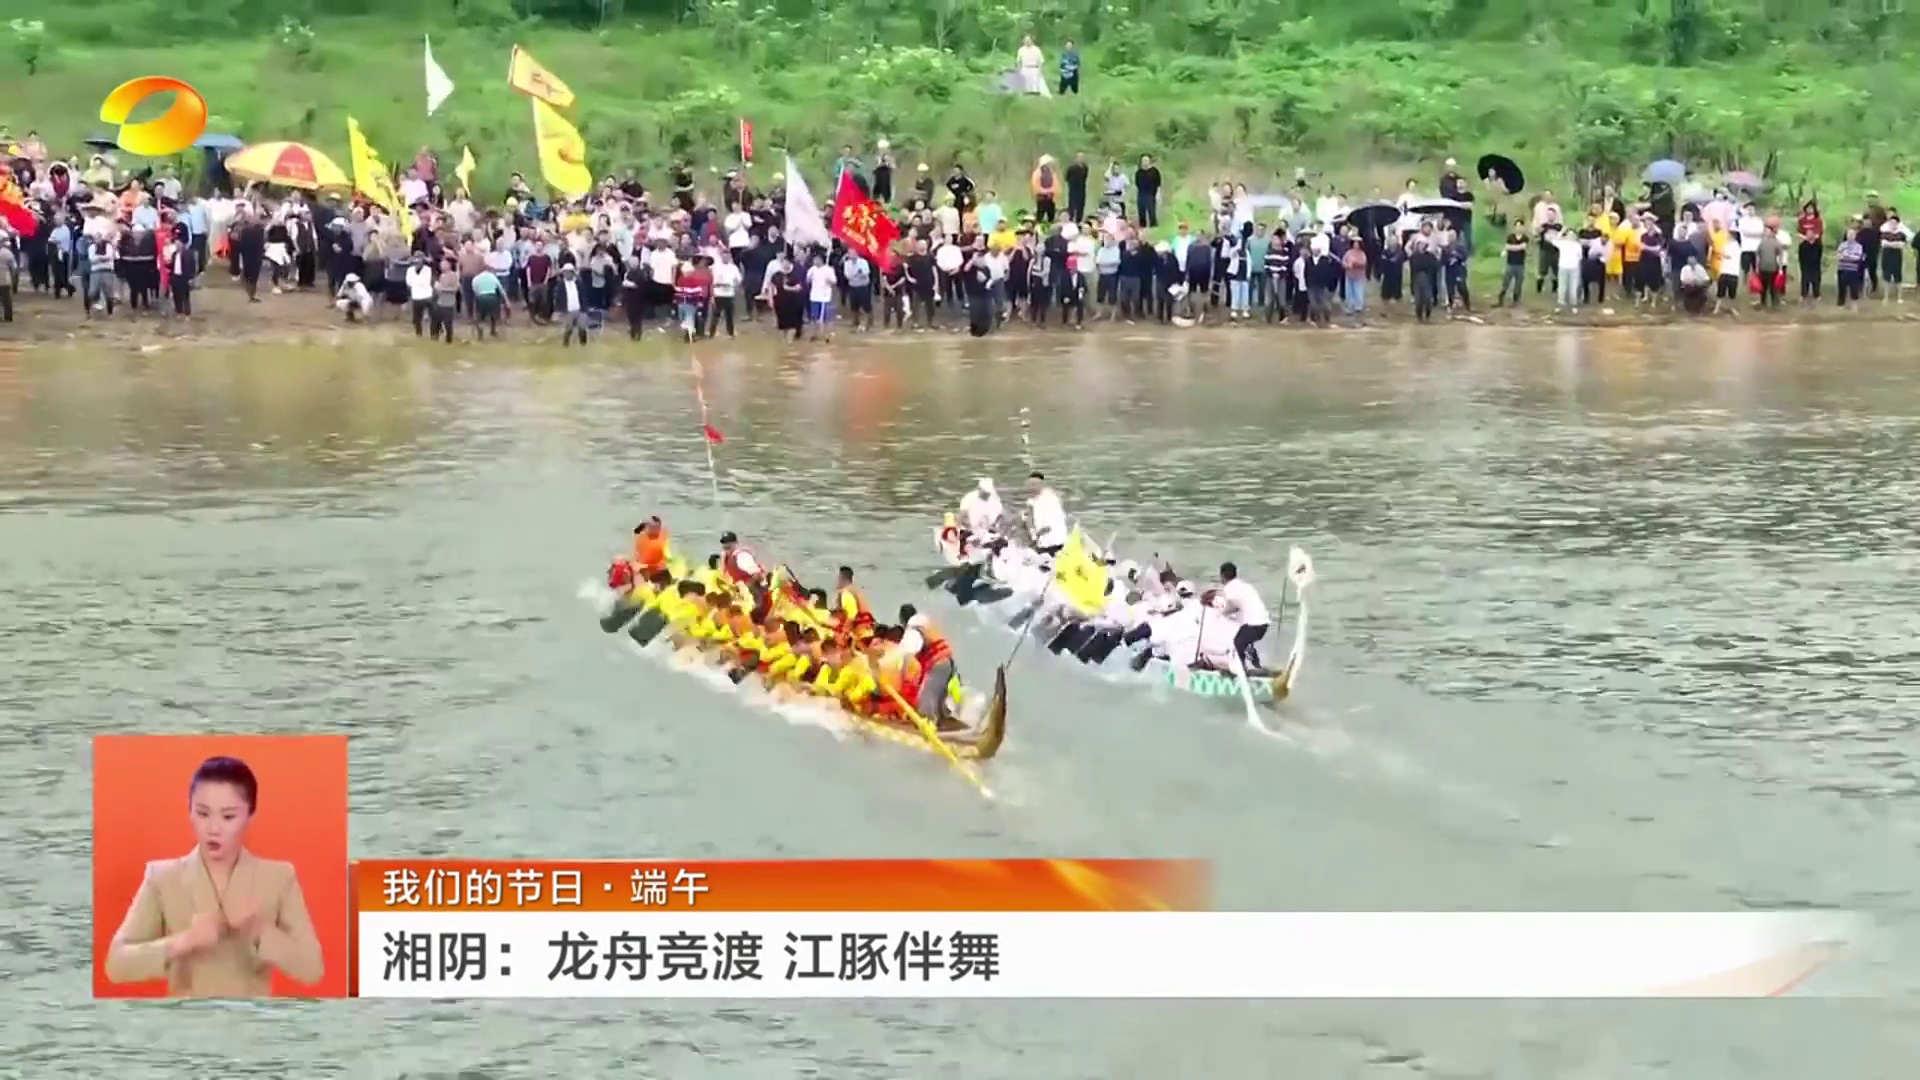 【湖南卫视】我们的节日·端午 湘阴：龙舟竞渡 江豚伴舞